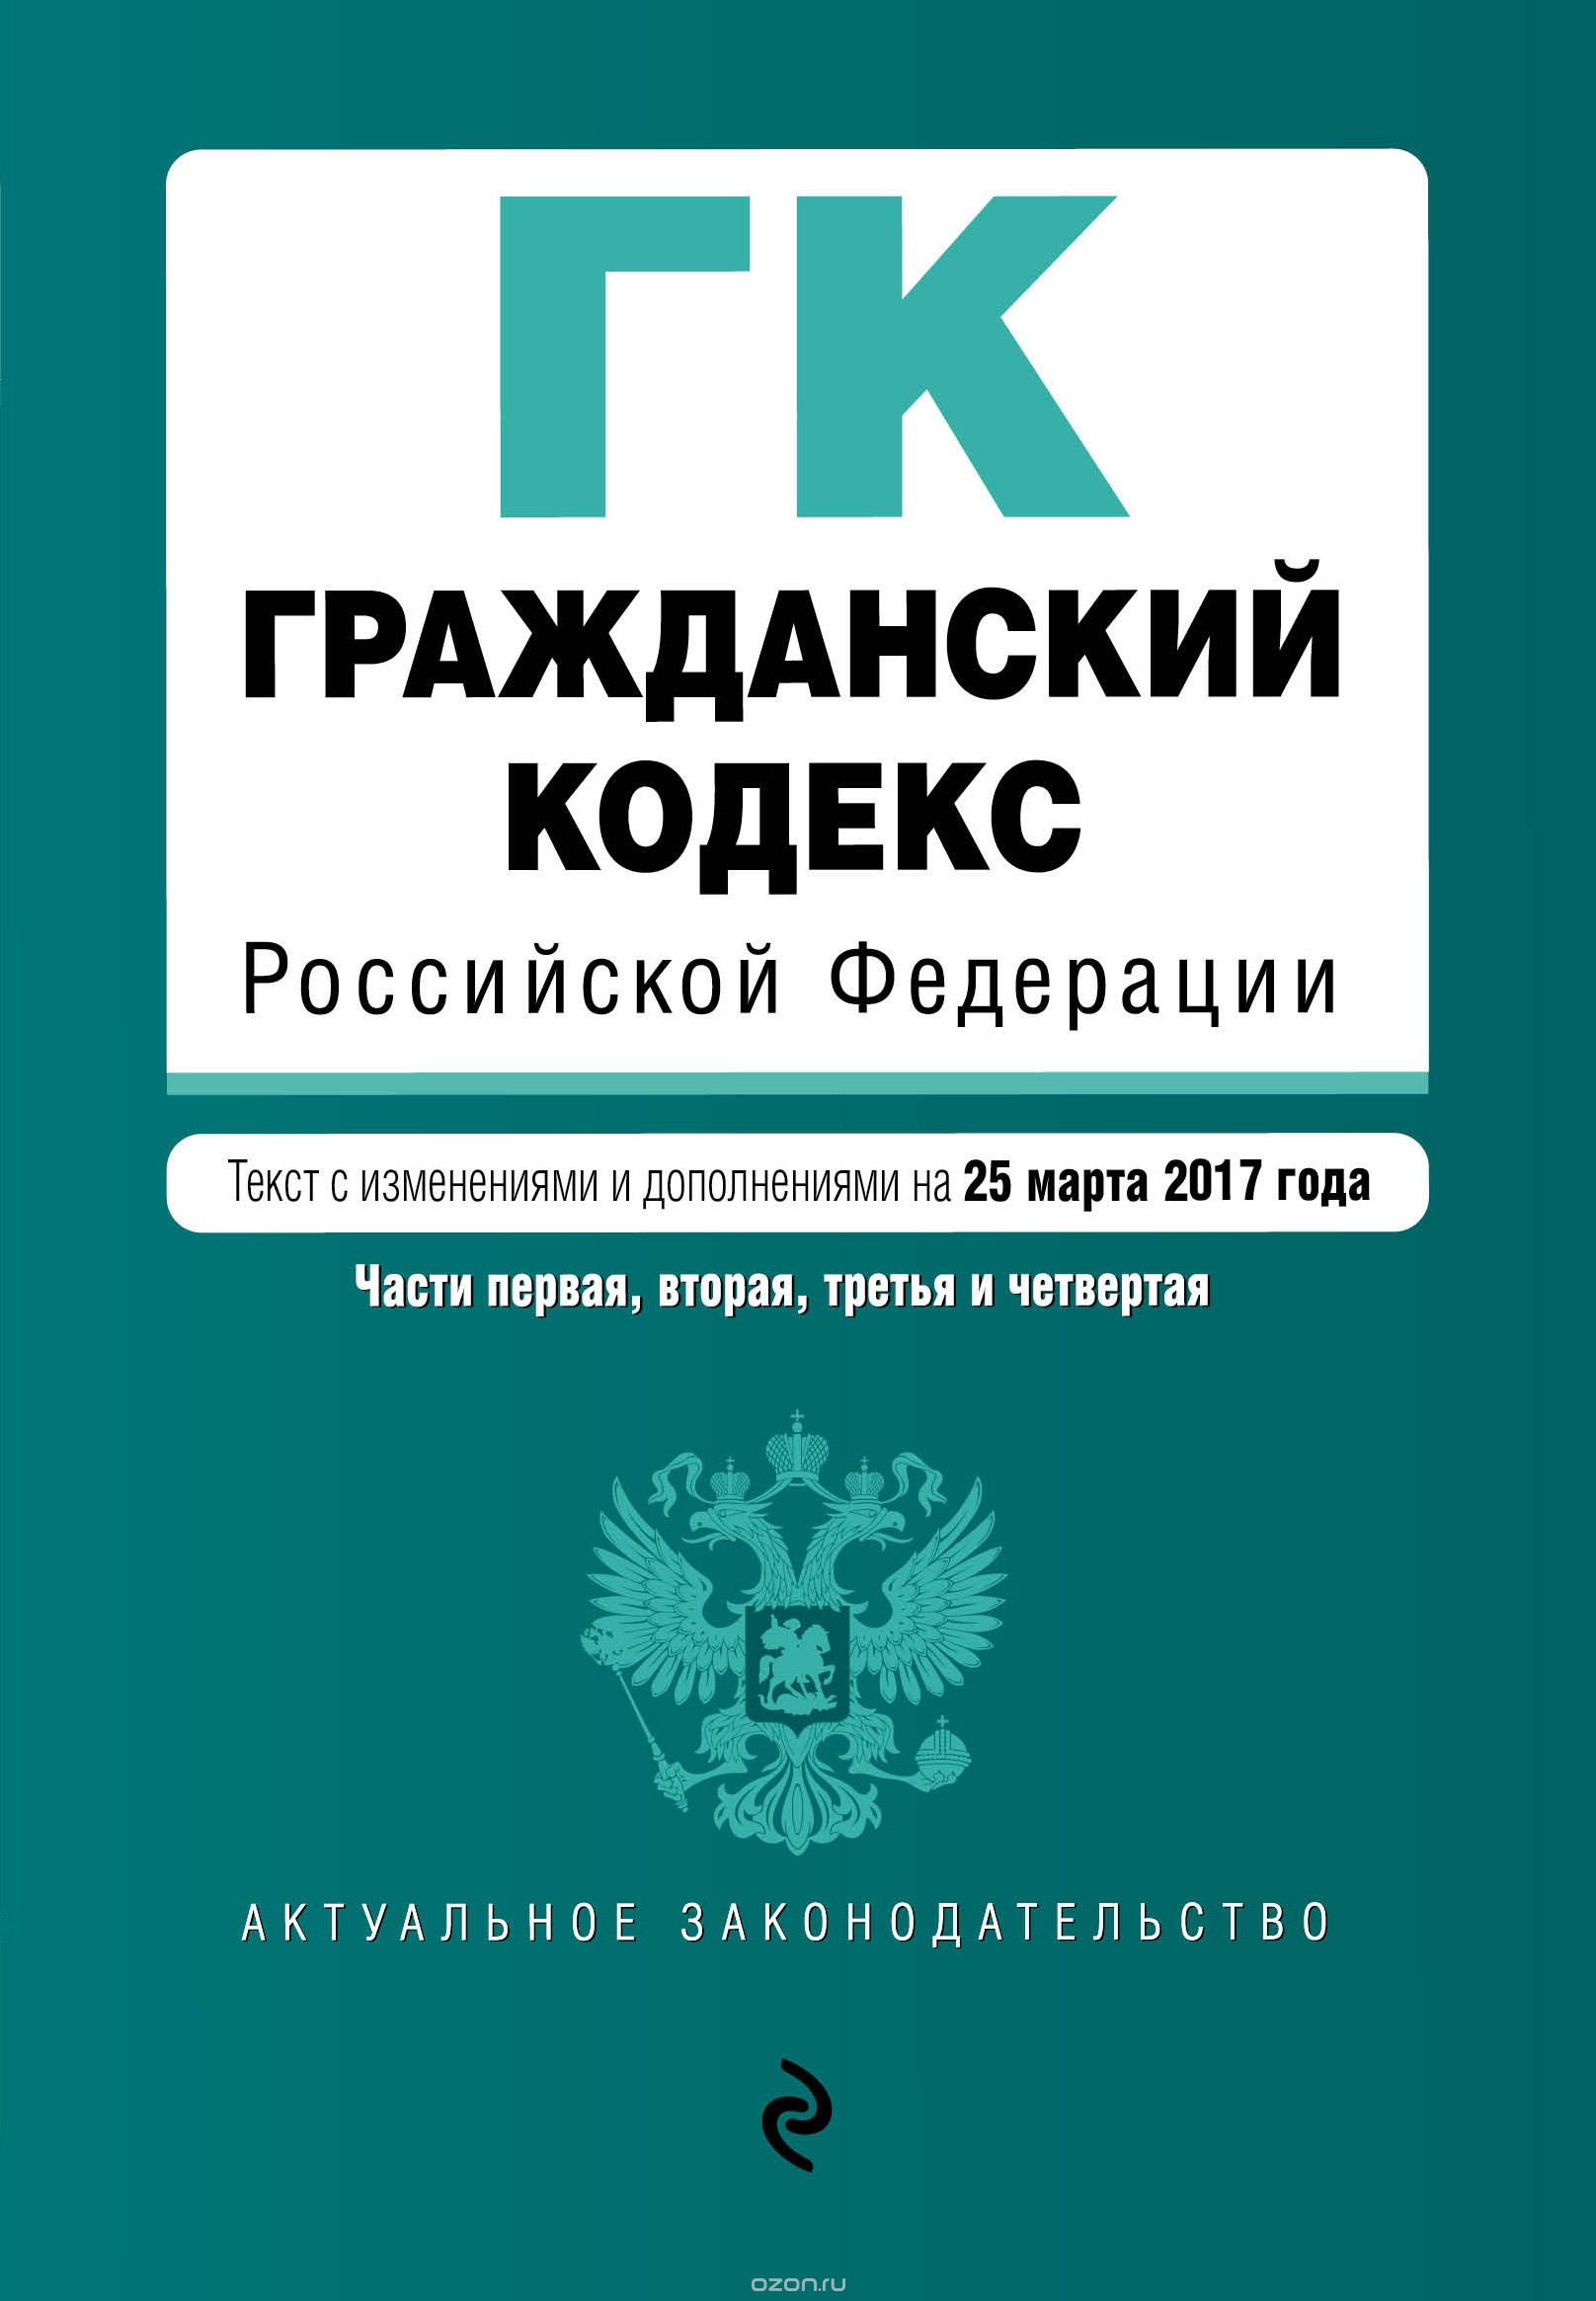 Скачать книгу "Гражданский кодекс Российской Федерации. Части первая, вторая, третья и четвертая"